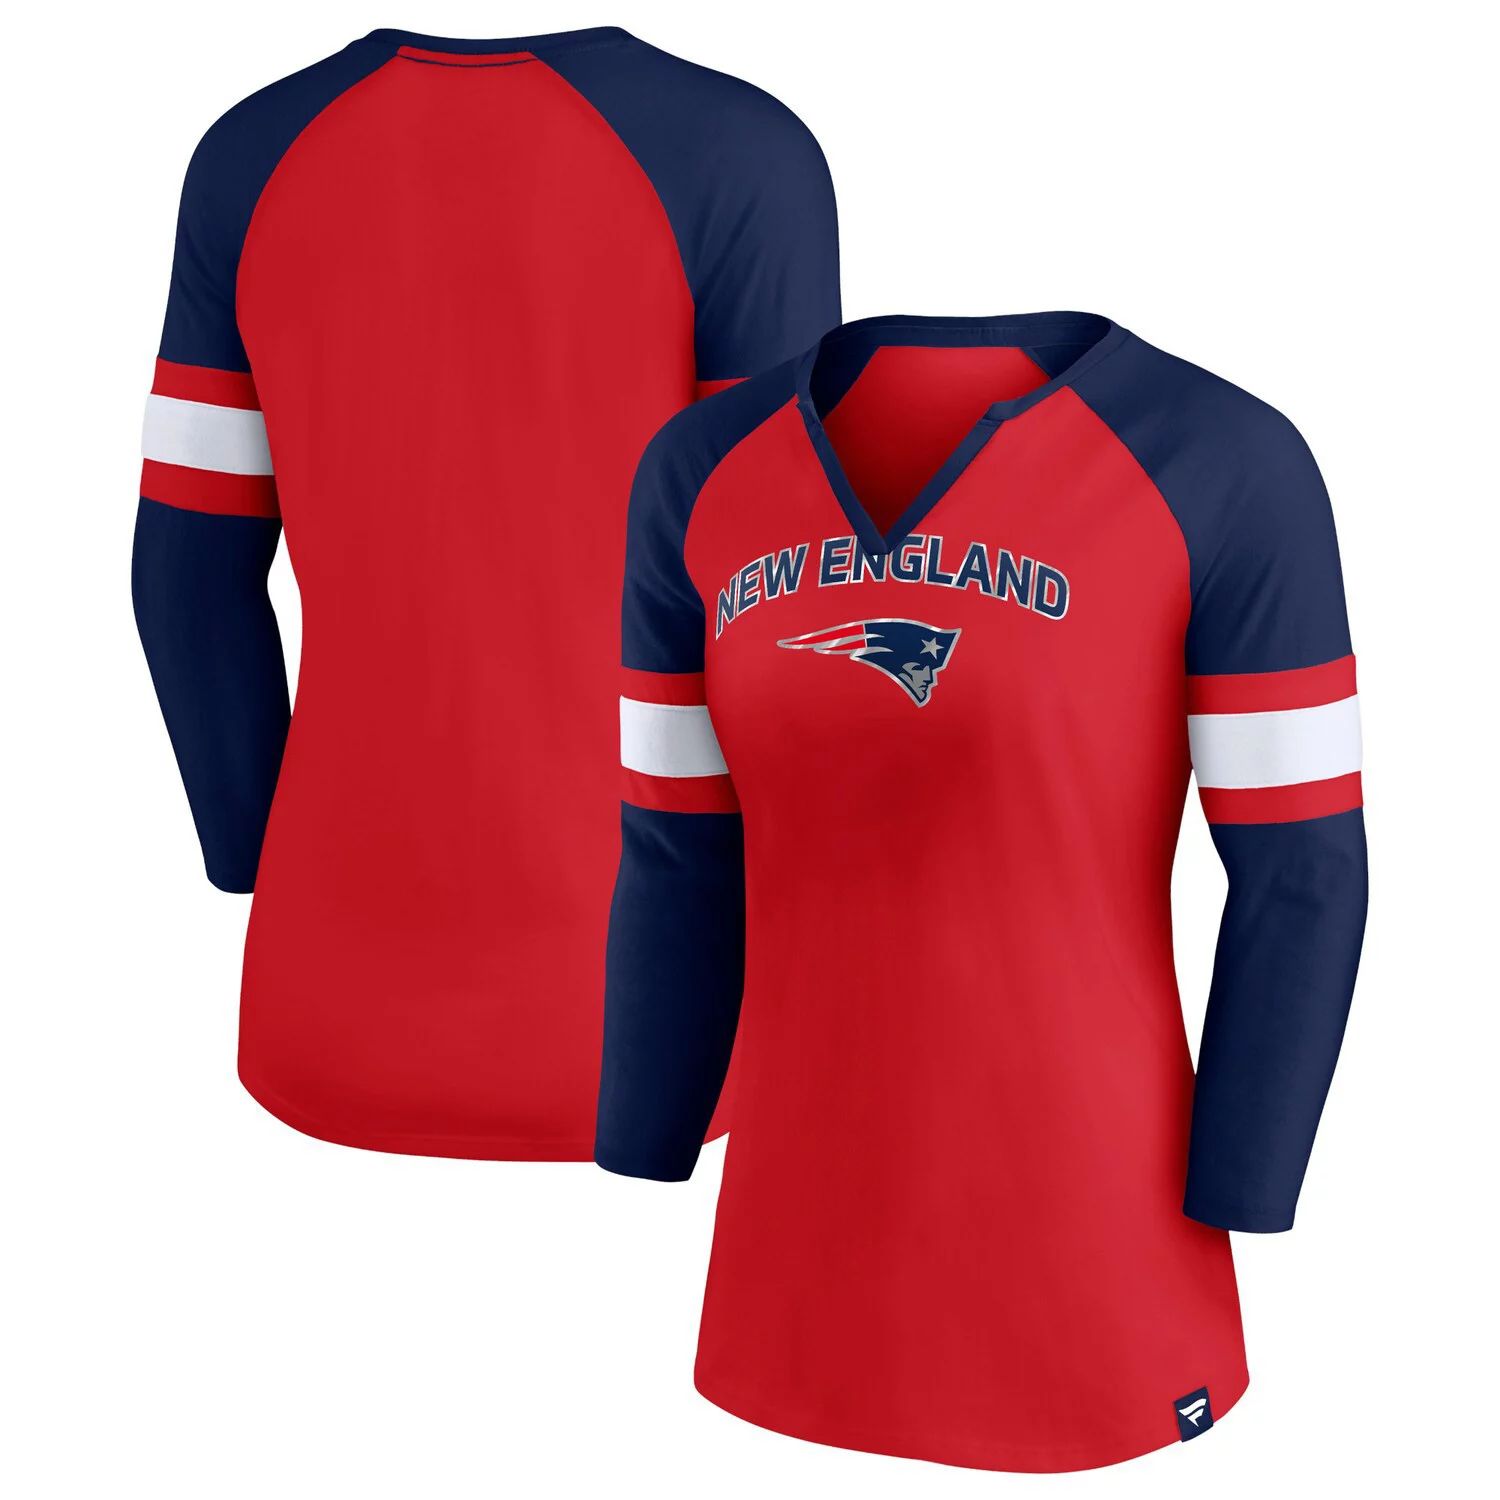 

Женская футболка Fanatics фирменного красного/темно-синего цвета New England Patriots Arch реглан с рукавами 3/4 и вырезом с вырезом Fanatics, Красный